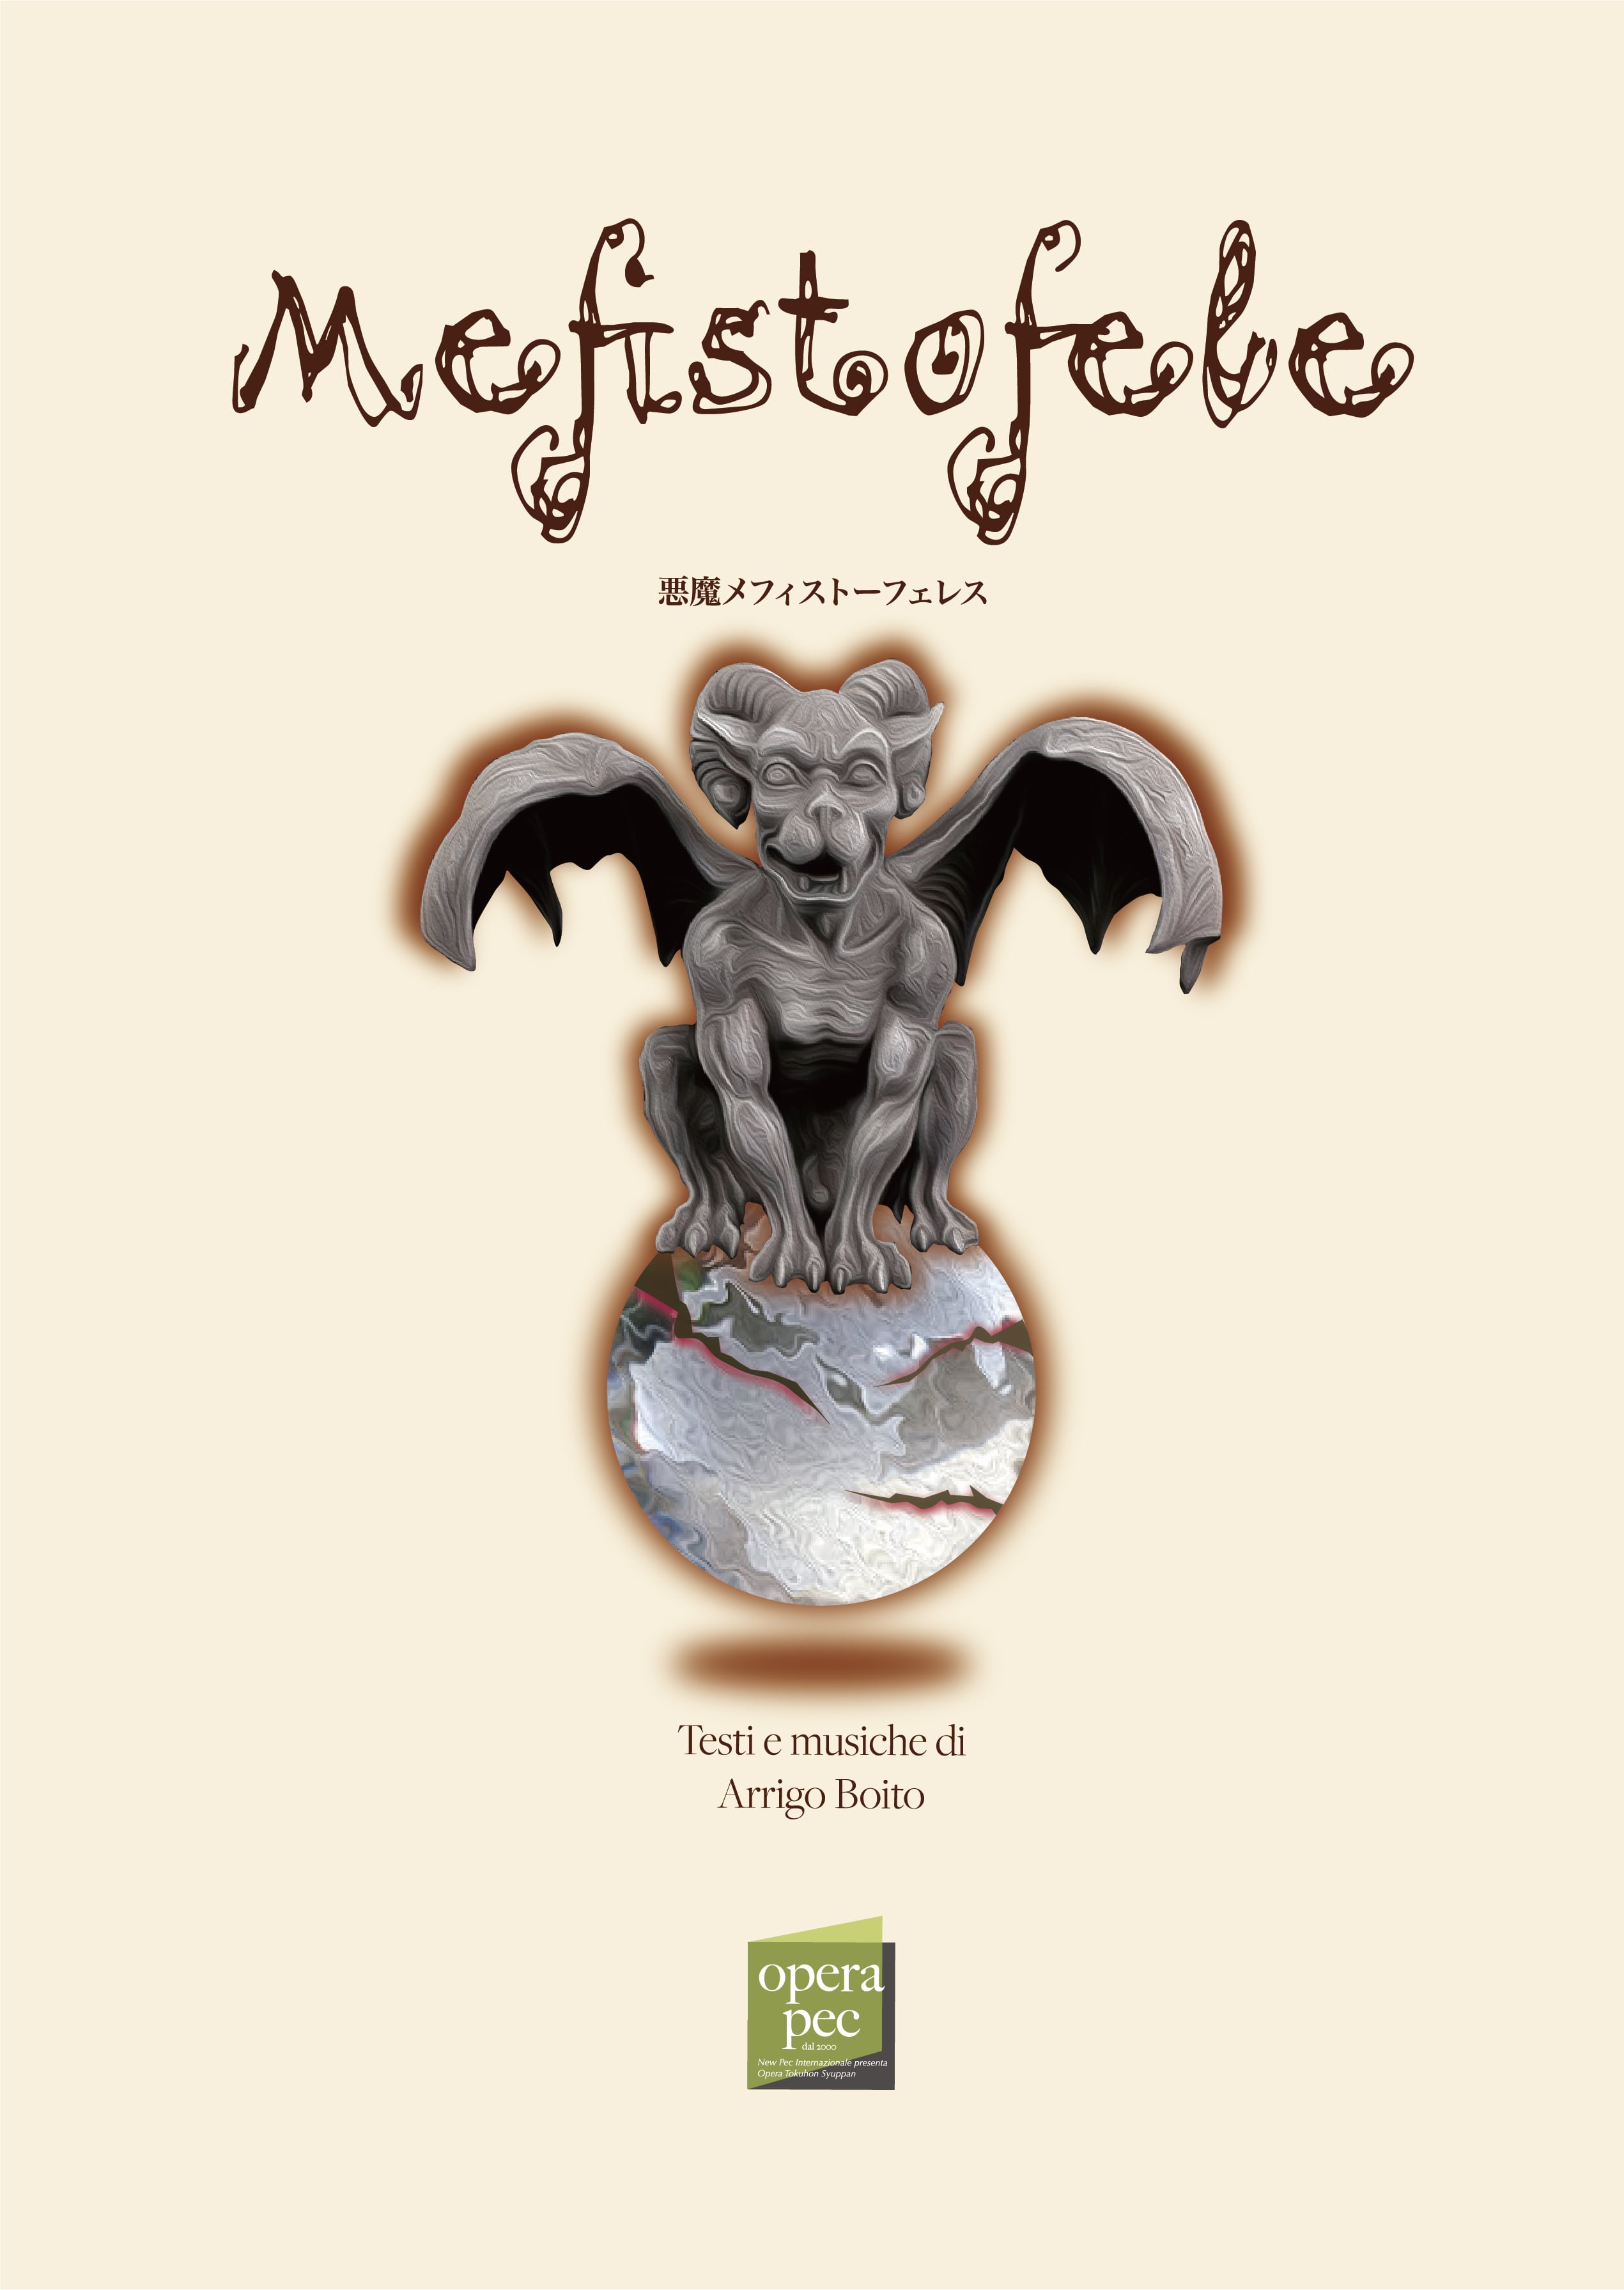 74】Mefistofele メフィストーフェレス（悪魔メフィストーフェレス